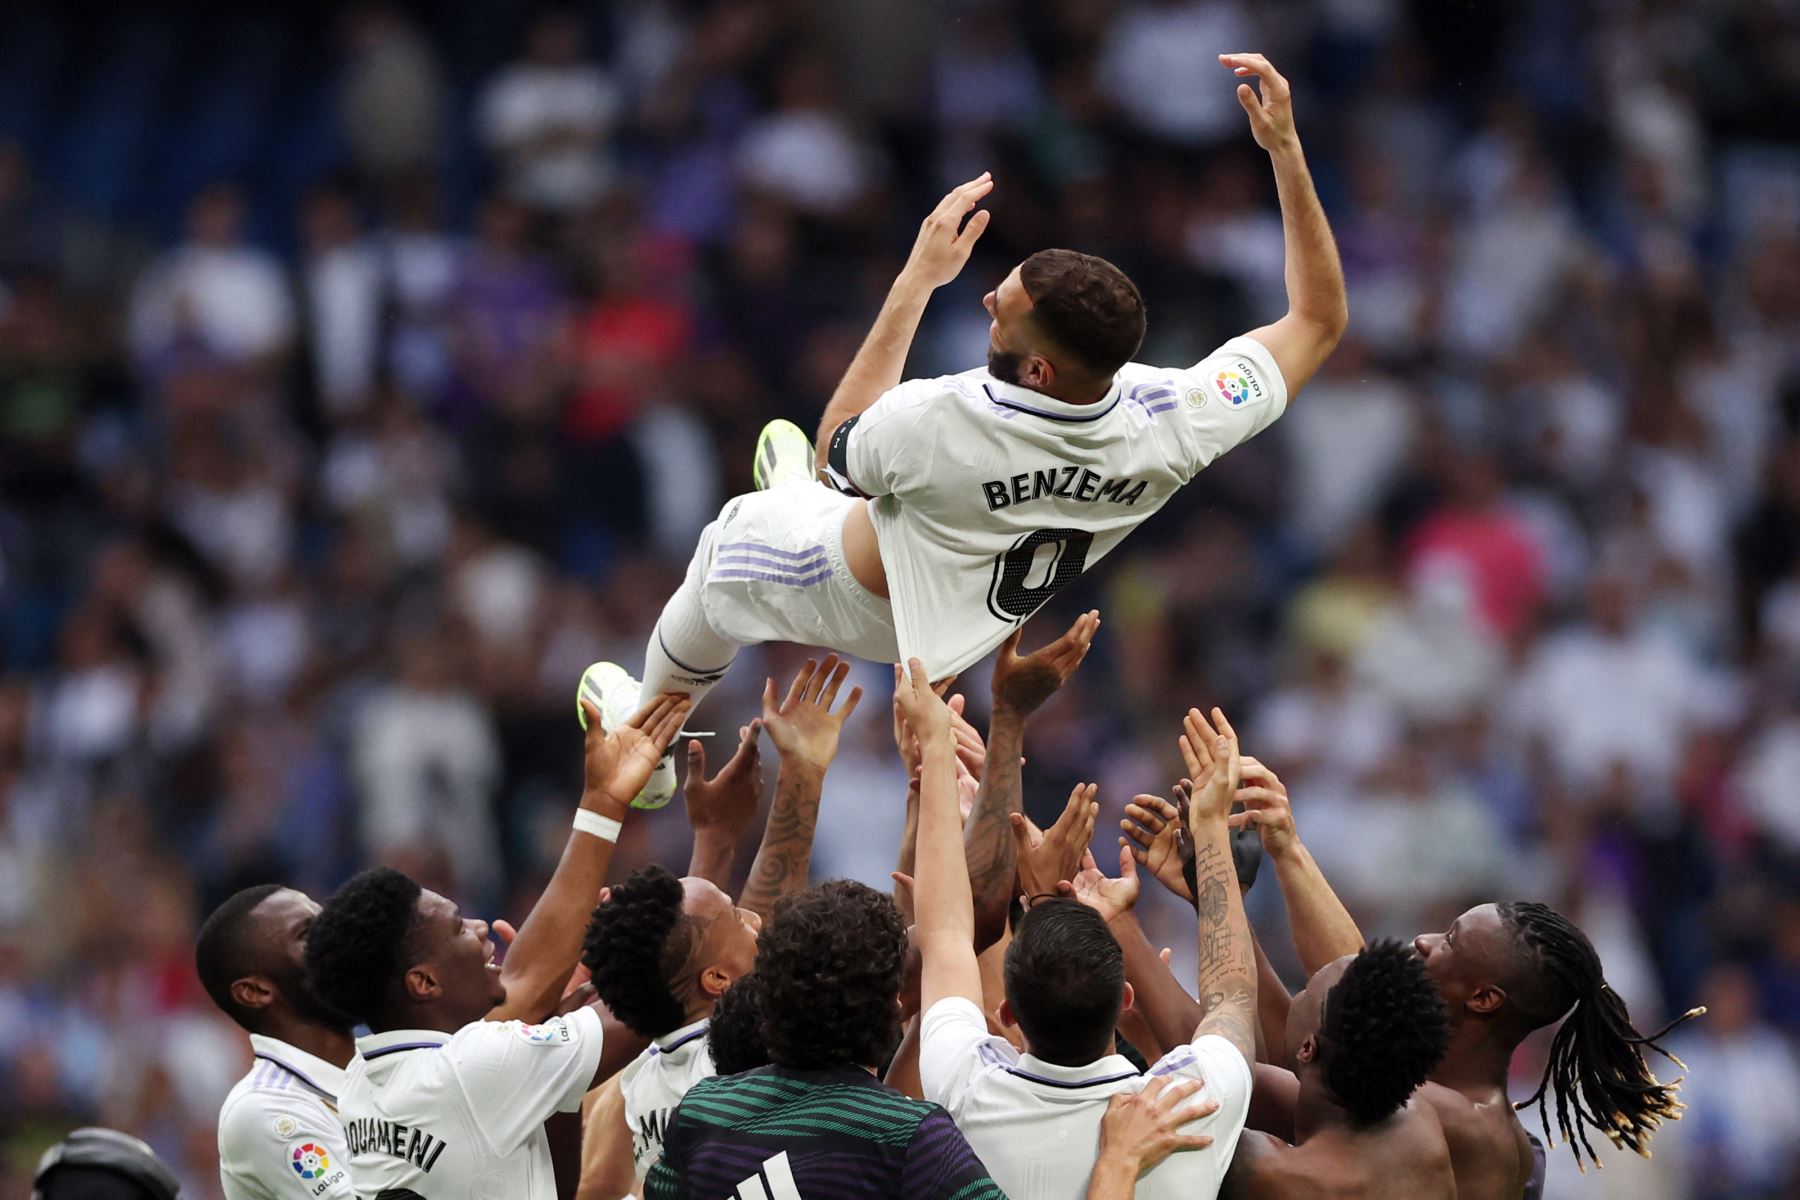 El delantero francés del Real Madrid, Karim Benzema, es lanzado al aire por sus compañeros al final del partido de fútbol de la liga española entre el Real Madrid CF y el Athletic Club de Bilbao en el estadio Santiago Bernabéu de Madrid el 4 de junio de 2023.
Foto: AFP